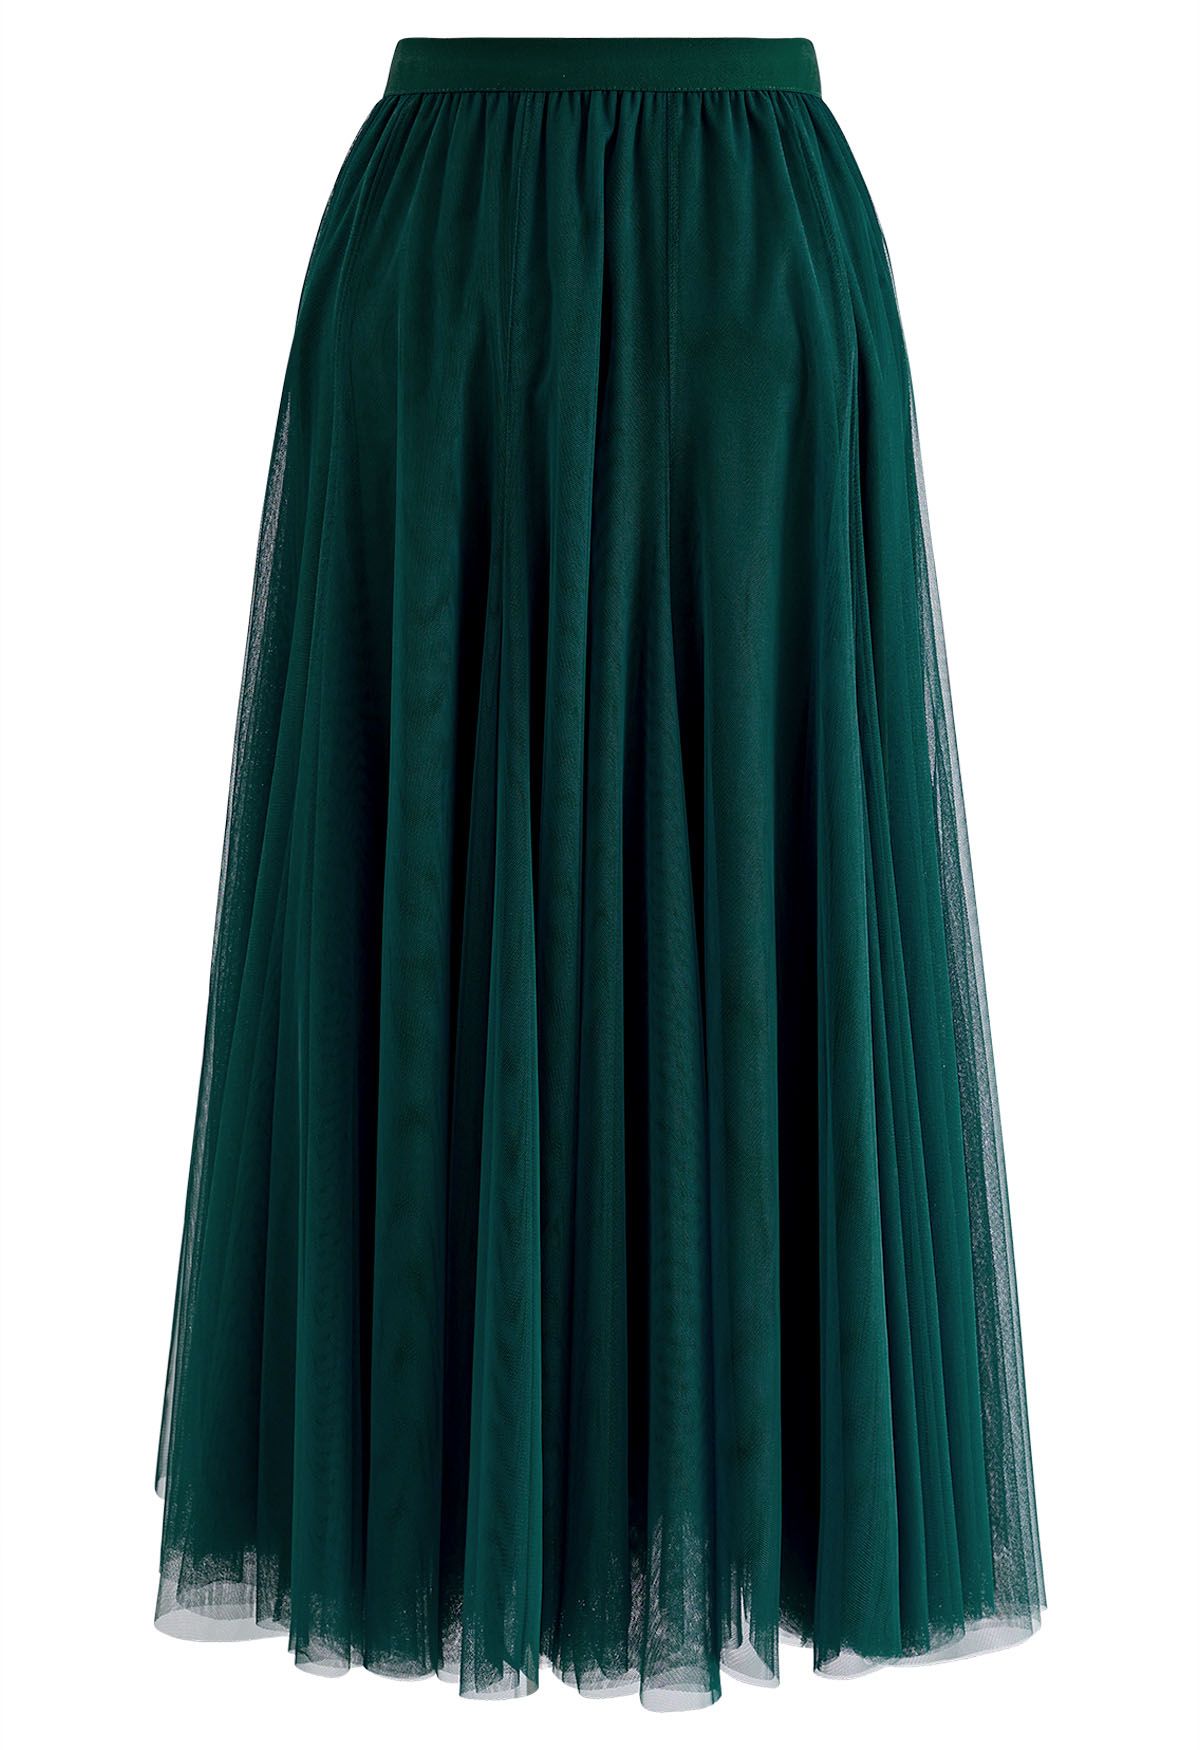 My Secret Garden Tulle Maxi Skirt in Dark Green - Retro, Indie and ...